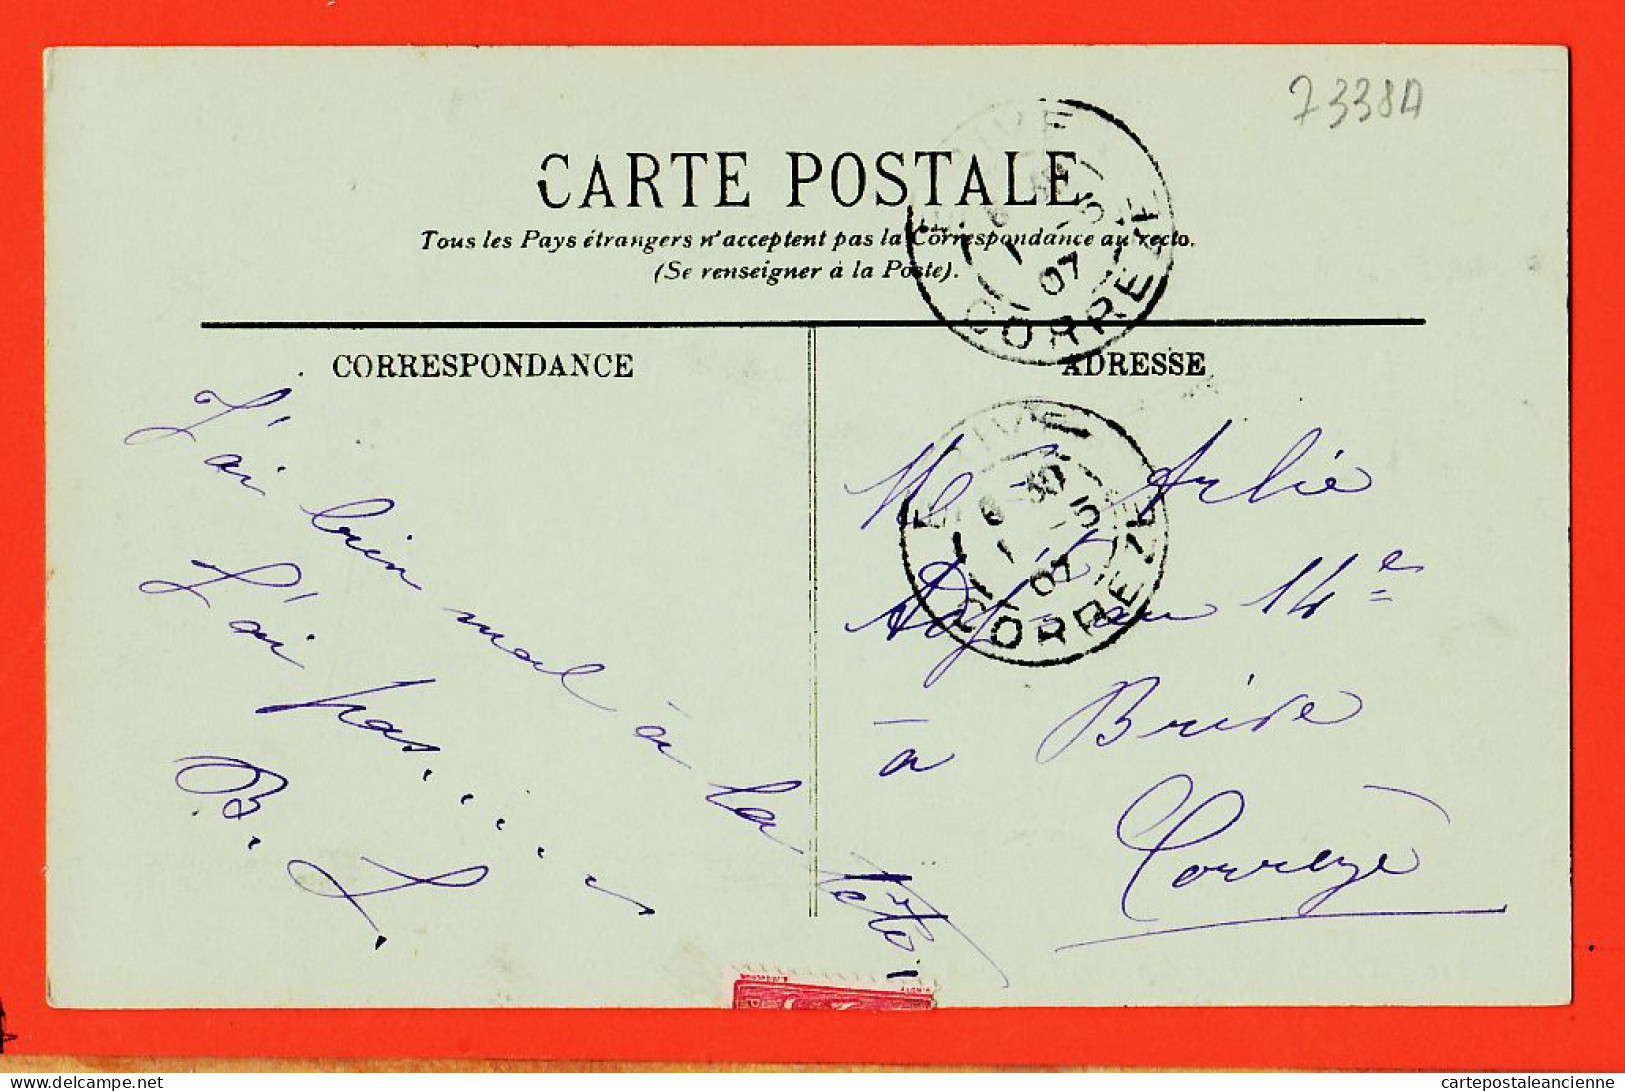 35526 / PARIS Vers La Place De LA CONCORDE 1907 à ARLIE 14e Regiment Infanterie Ligne Brive LEVY  710 - La Seine Et Ses Bords